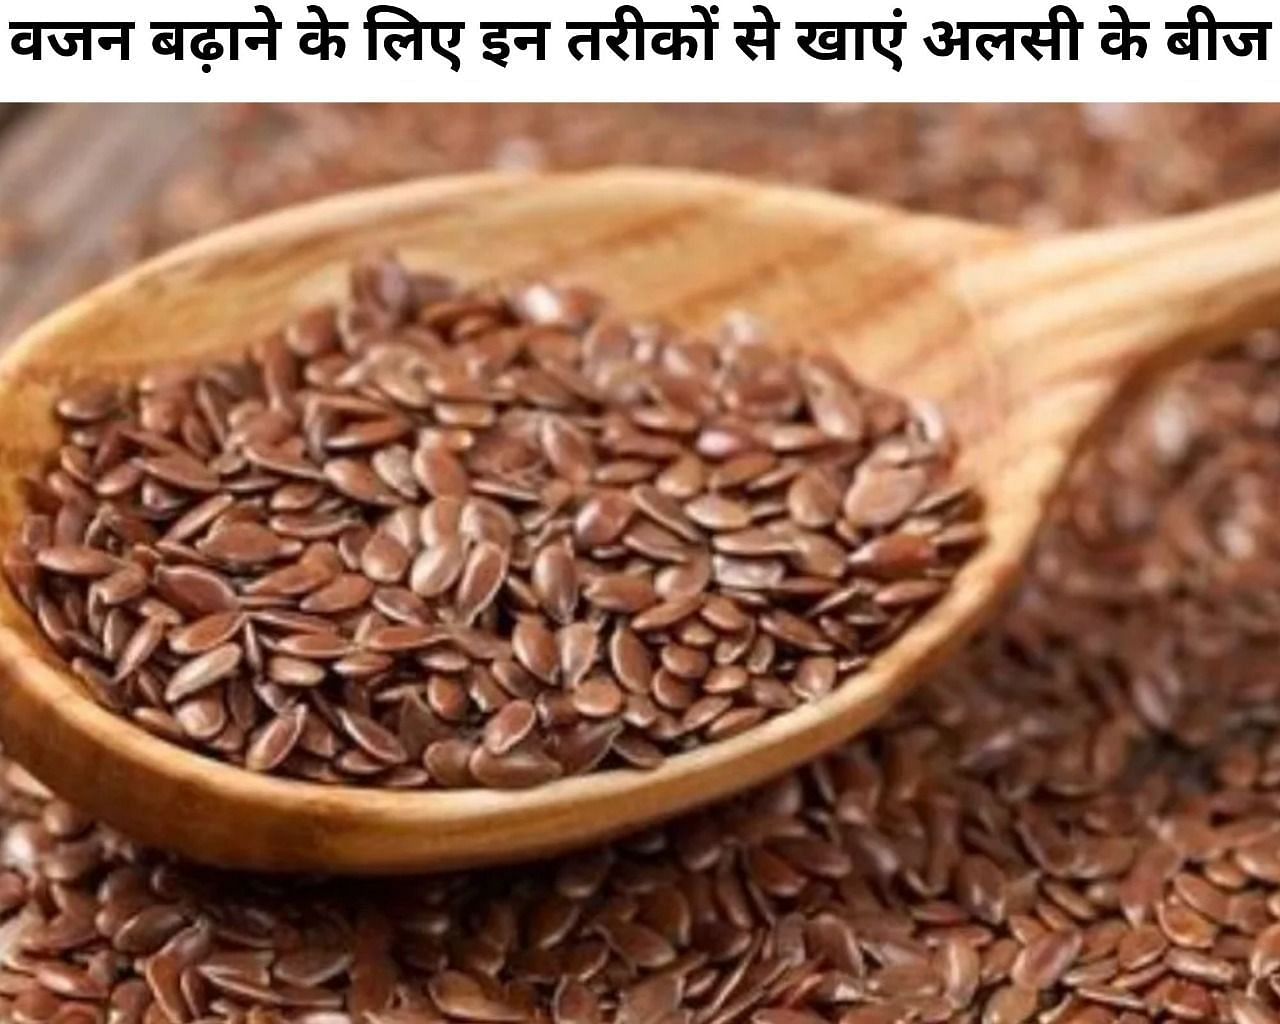 वजन बढ़ाने के लिए इन तरीकों से खाएं अलसी के बीज (फोटो - sportskeeda hindi)